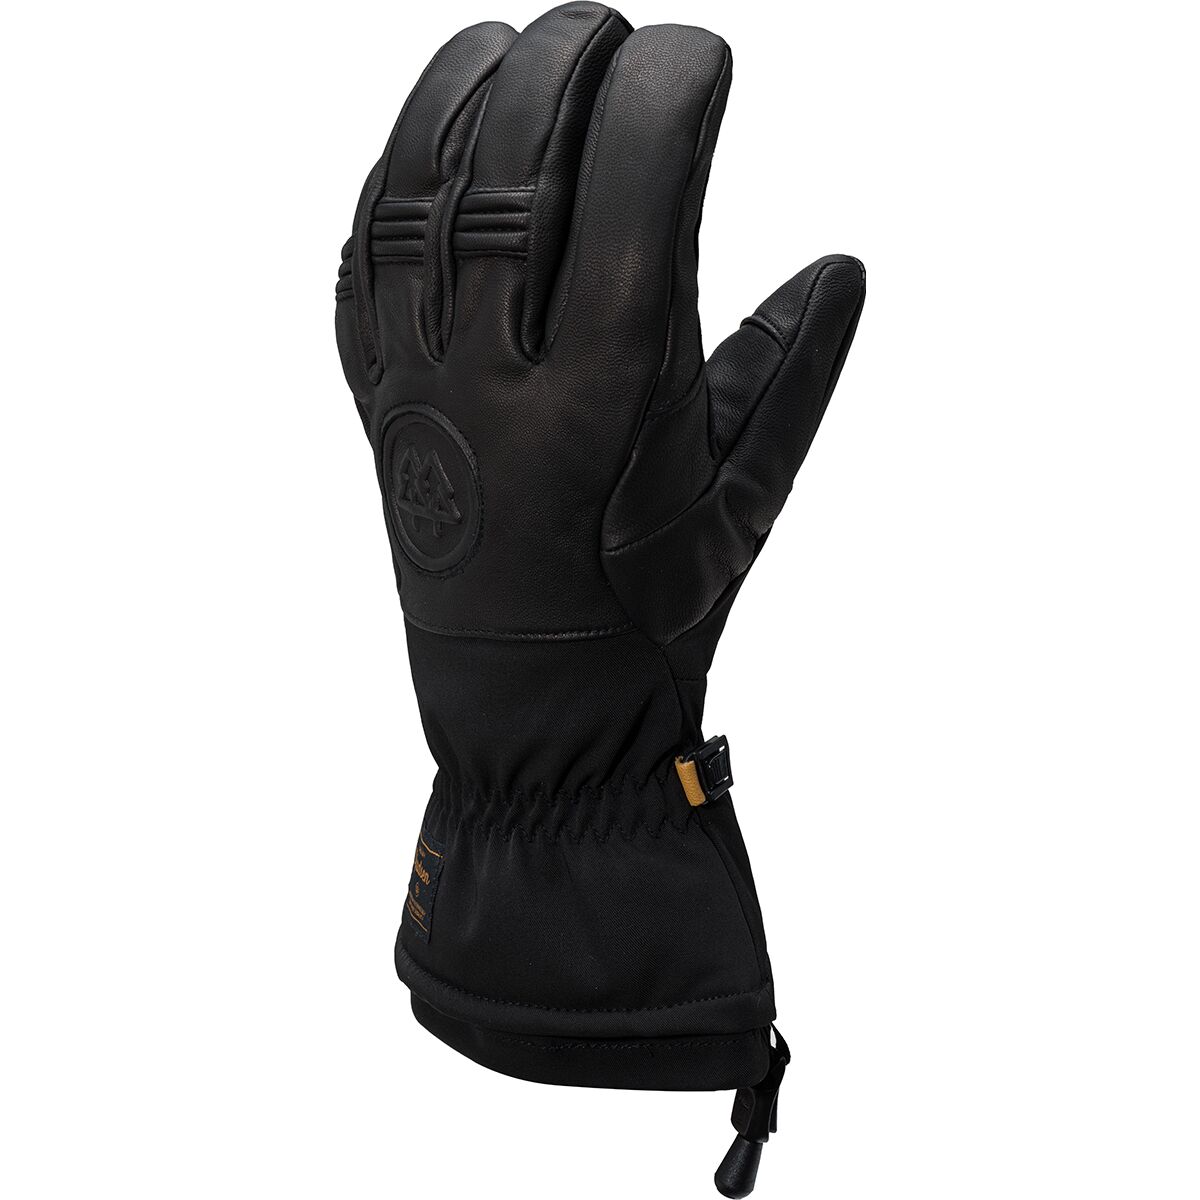 Swany Skylar 2.1 Glove - Men's Black2